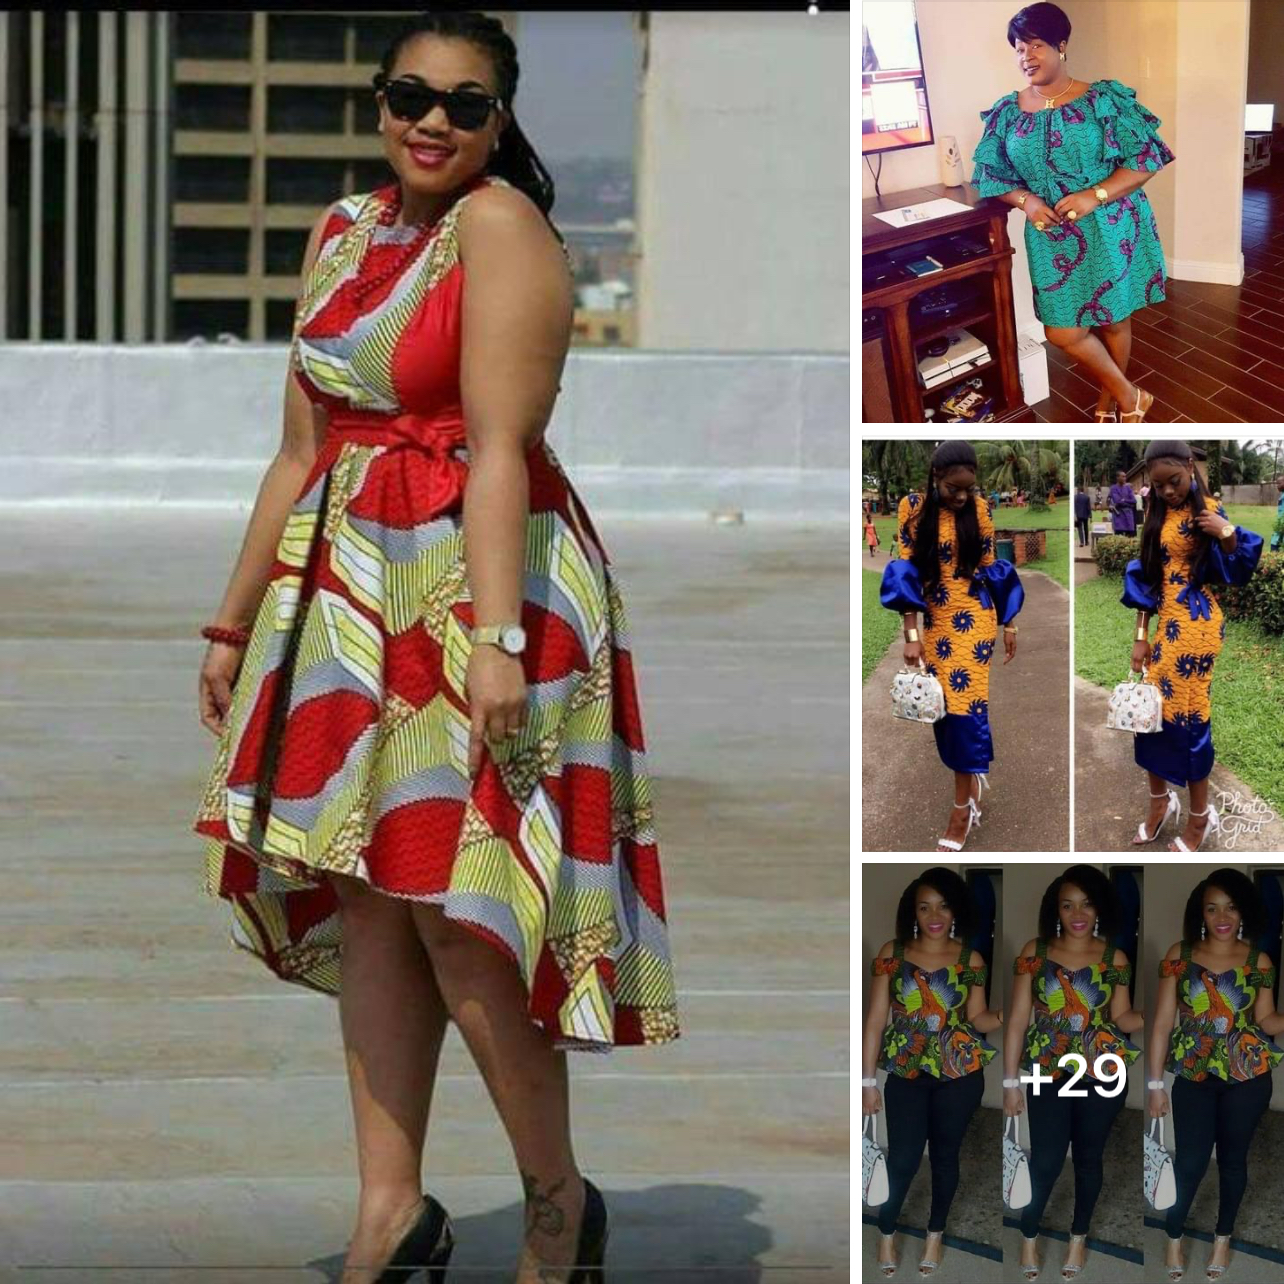 Le tissu wax, véritable joyau de la mode africaine, a conquis le monde de la mode grâce à ses motifs vibrants et ses couleurs éclatantes.